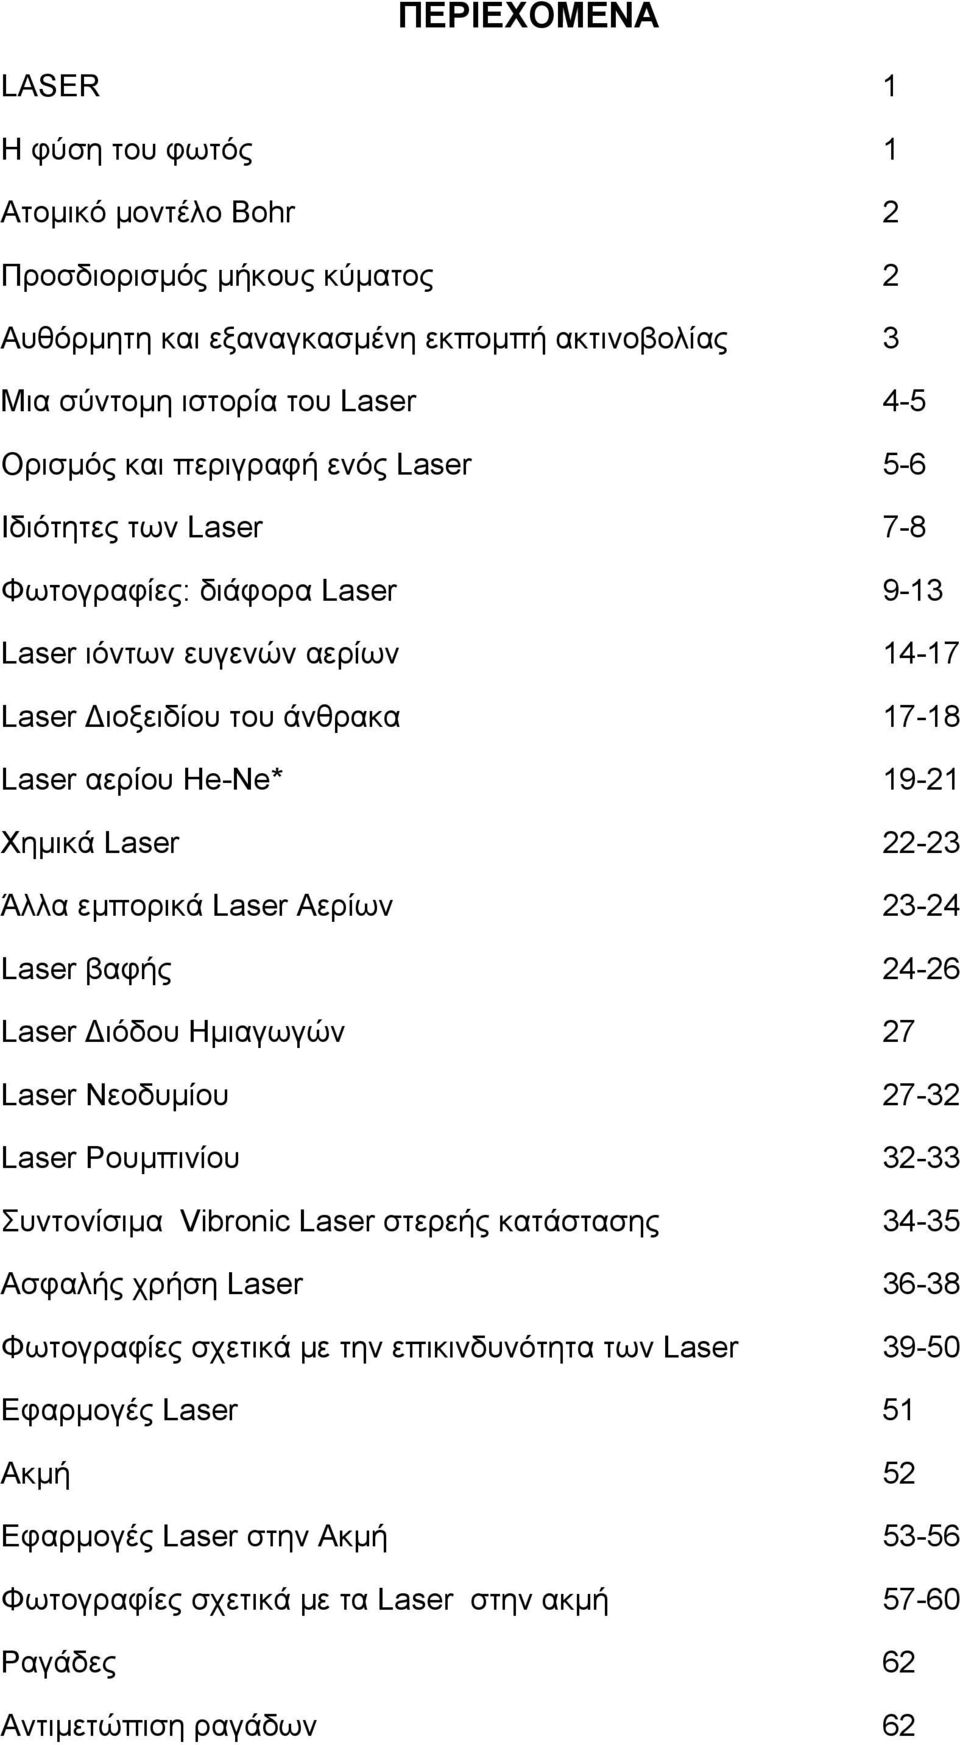 Άλλα εμπορικά Laser Αερίων 23-24 Laser βαφής 24-26 Laser Διόδου Ημιαγωγών 27 Laser Νεοδυμίου 27-32 Laser Ρουμπινίου 32-33 Συντονίσιμα Vibronic Laser στερεής κατάστασης 34-35 Ασφαλής χρήση Laser